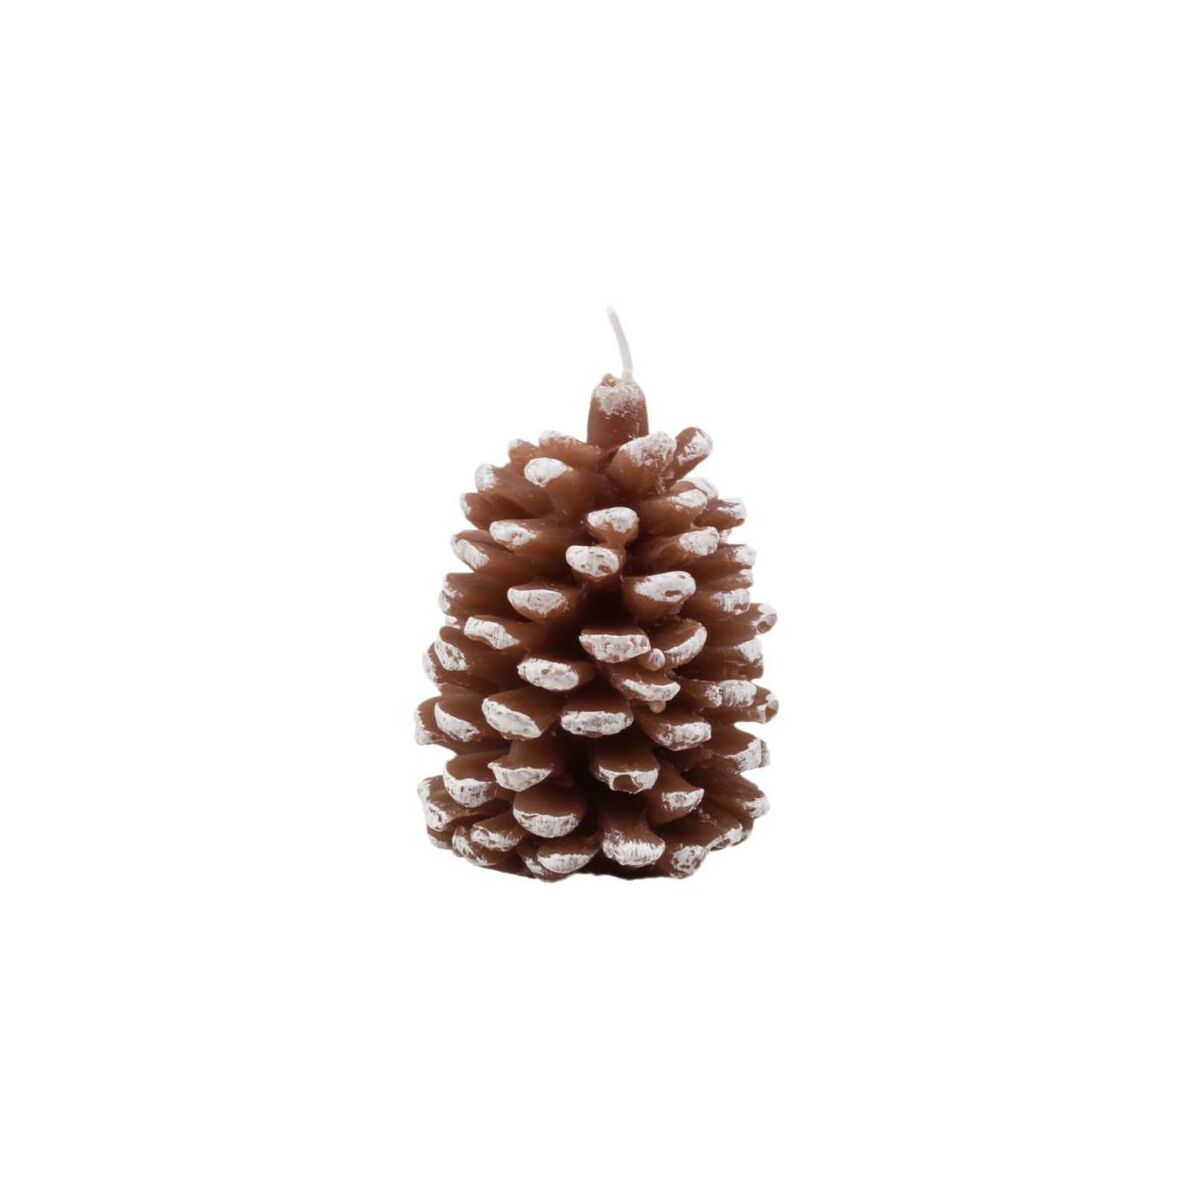 Świeca świąteczna szyszka ośnieżona brązowa wys. 6.5 cm